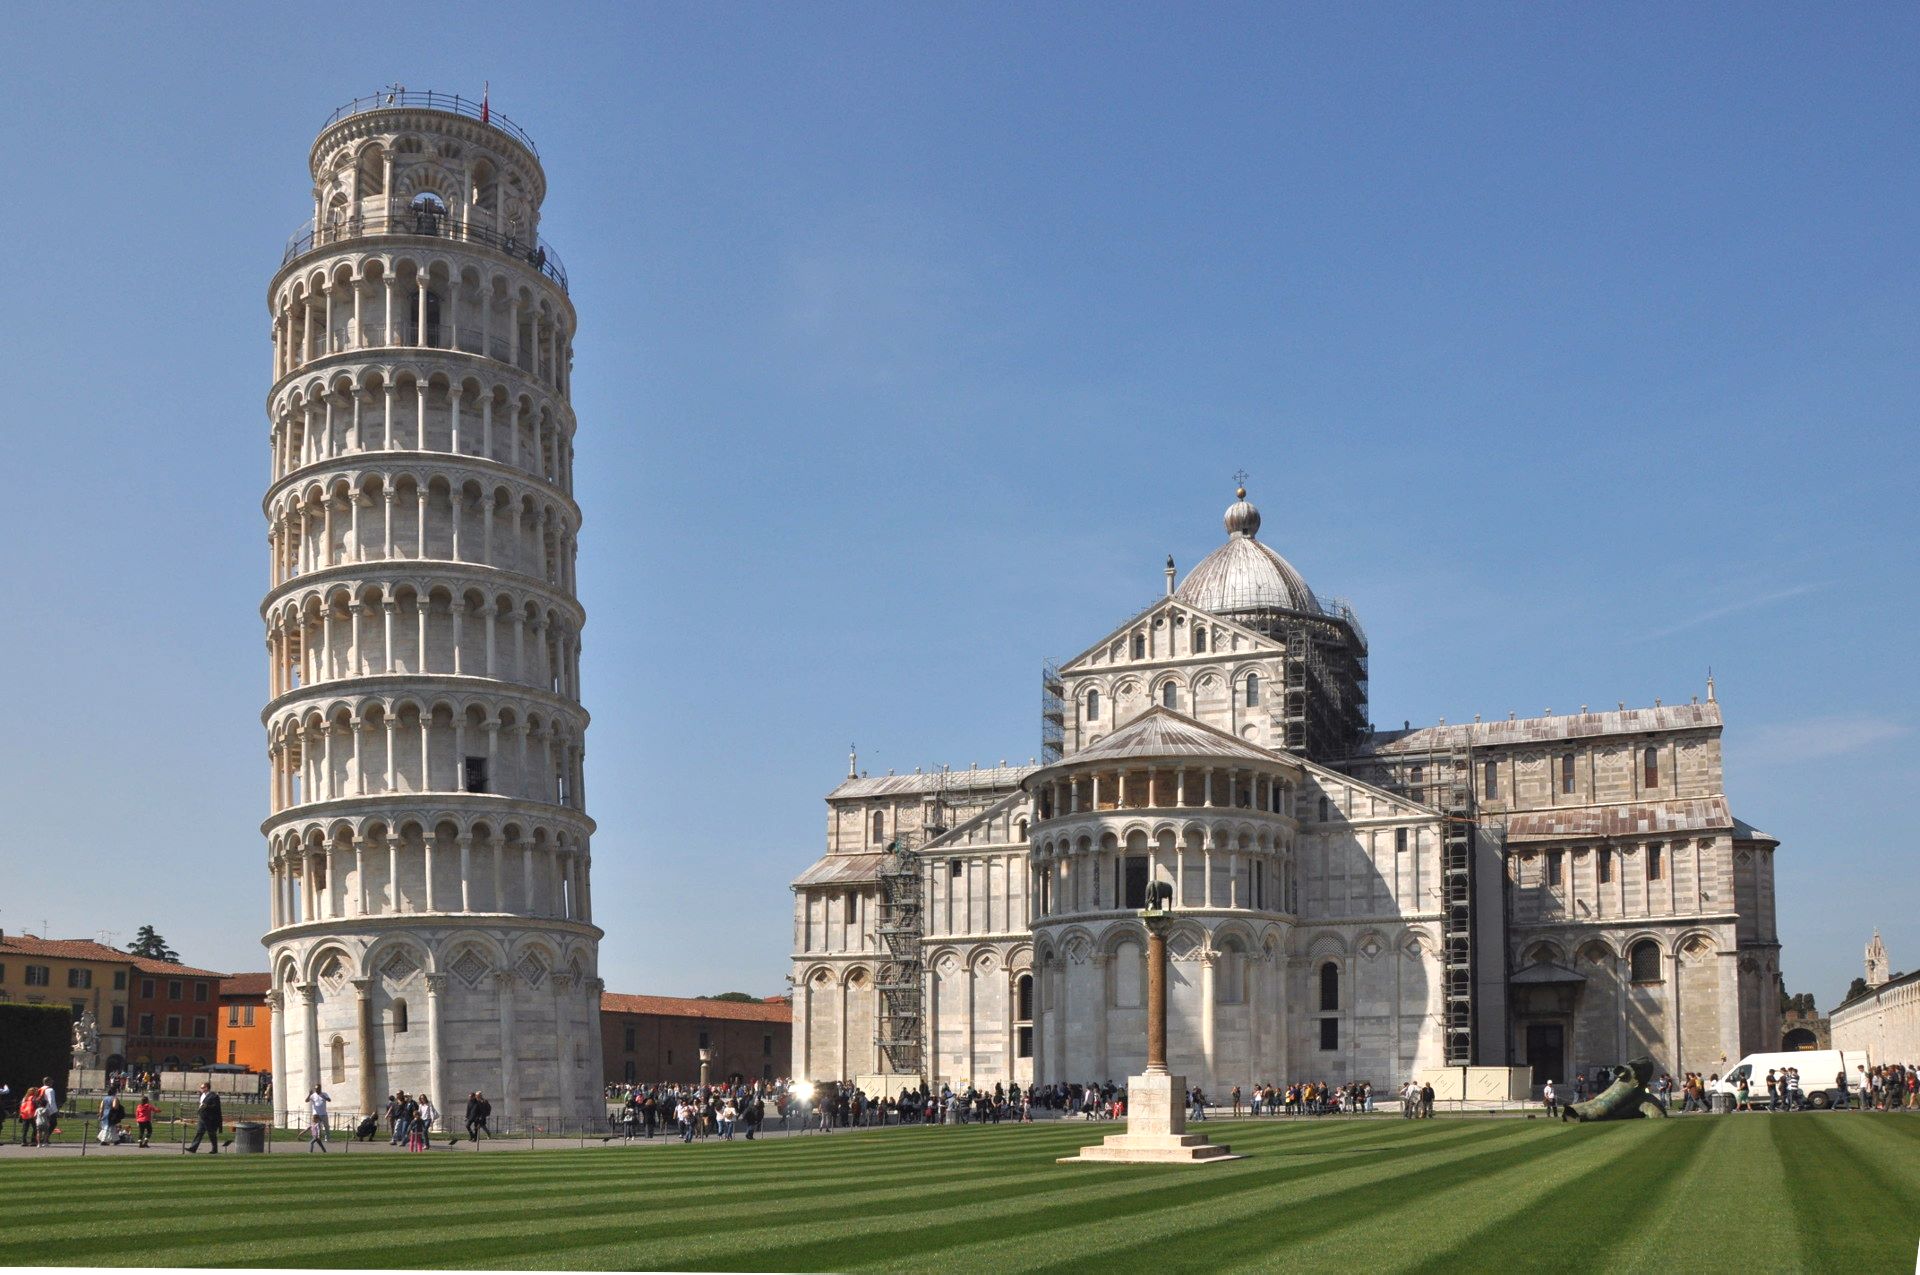 Dom und Schiefer Turm am Piazza dei Miracoli in Pisa